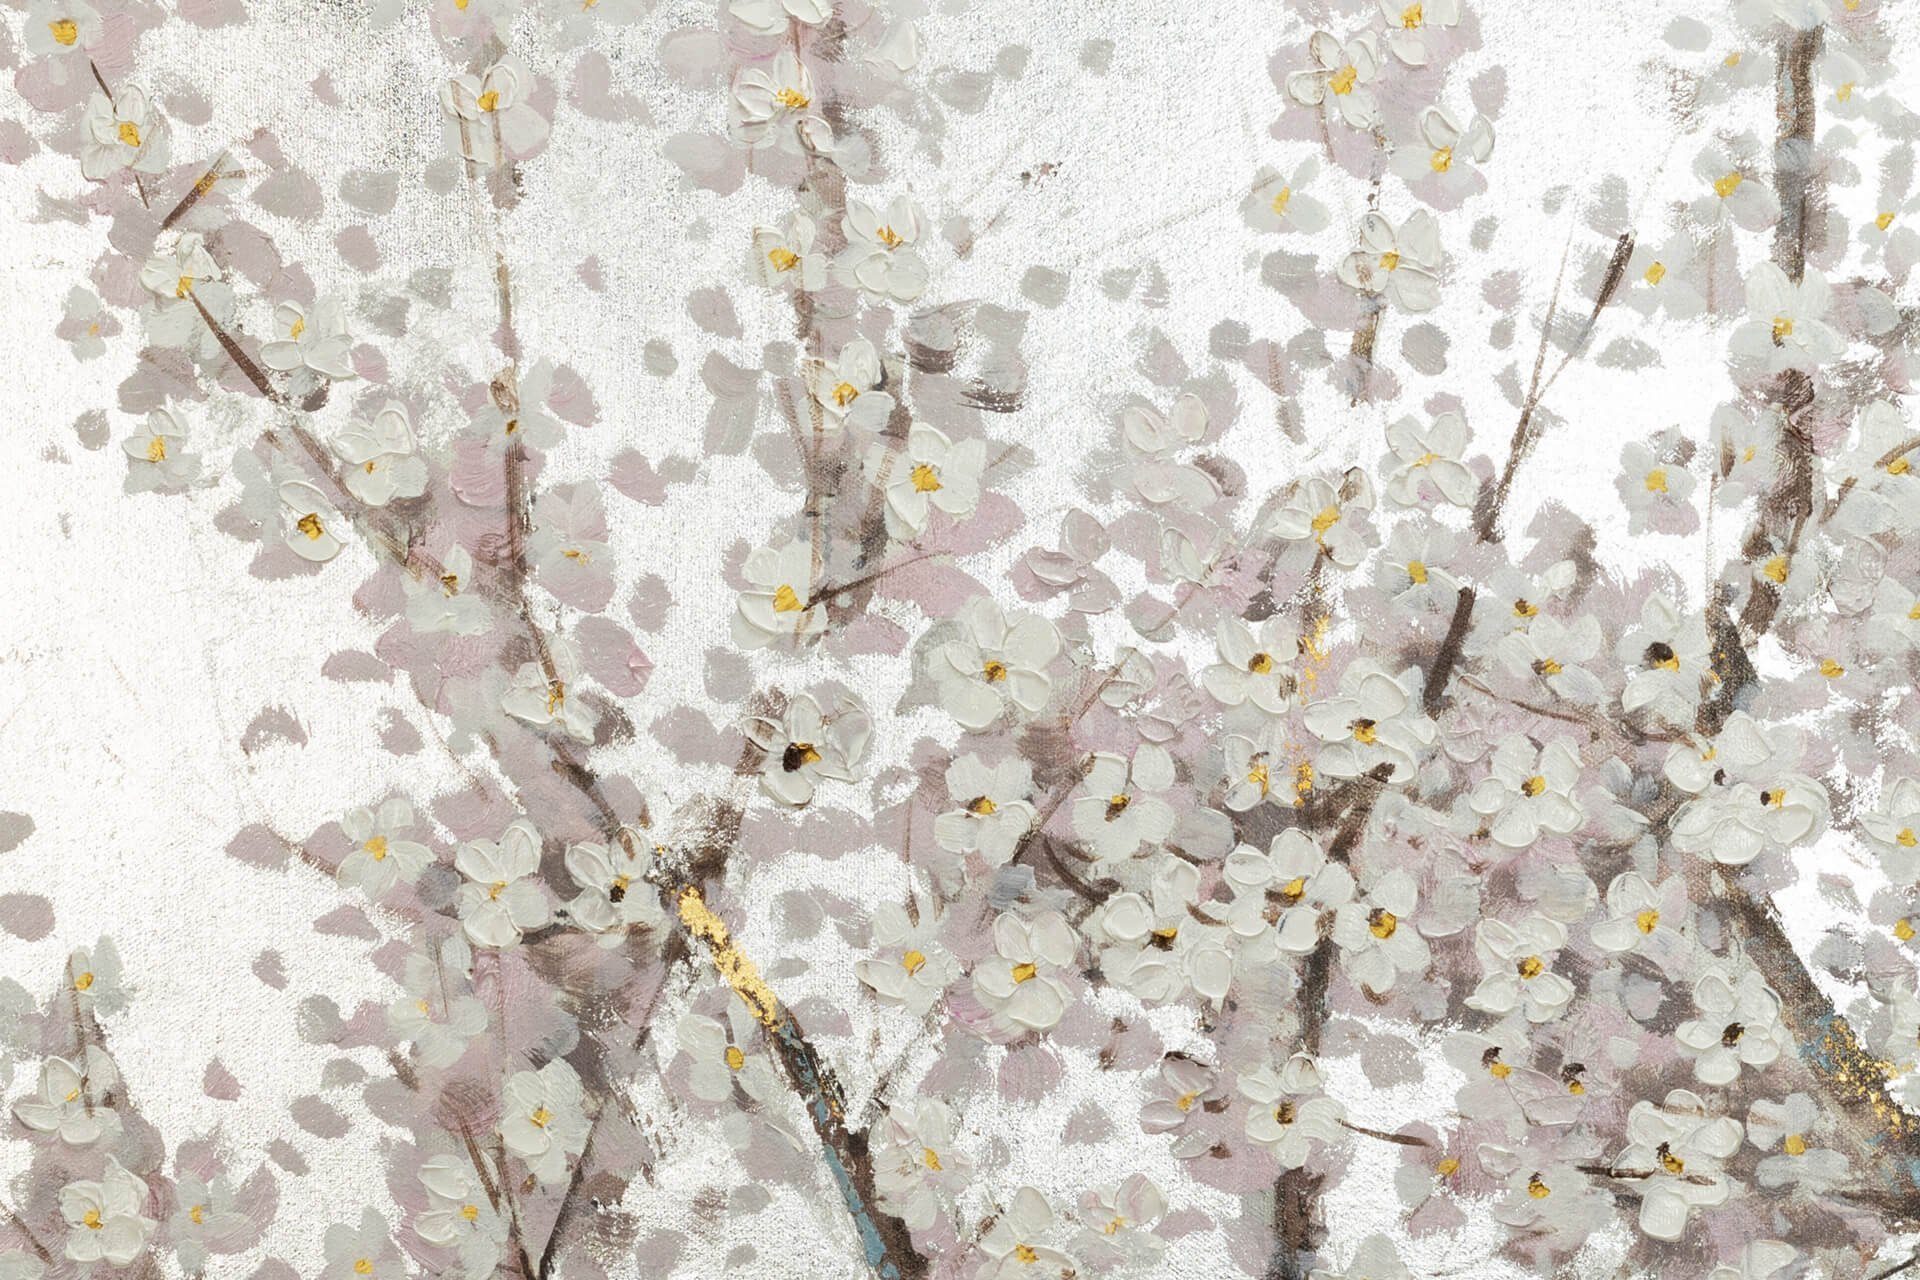 120x60 Wandbild Pearls in KUNSTLOFT Bloom 100% Leinwandbild cm, Gemälde HANDGEMALT Wohnzimmer